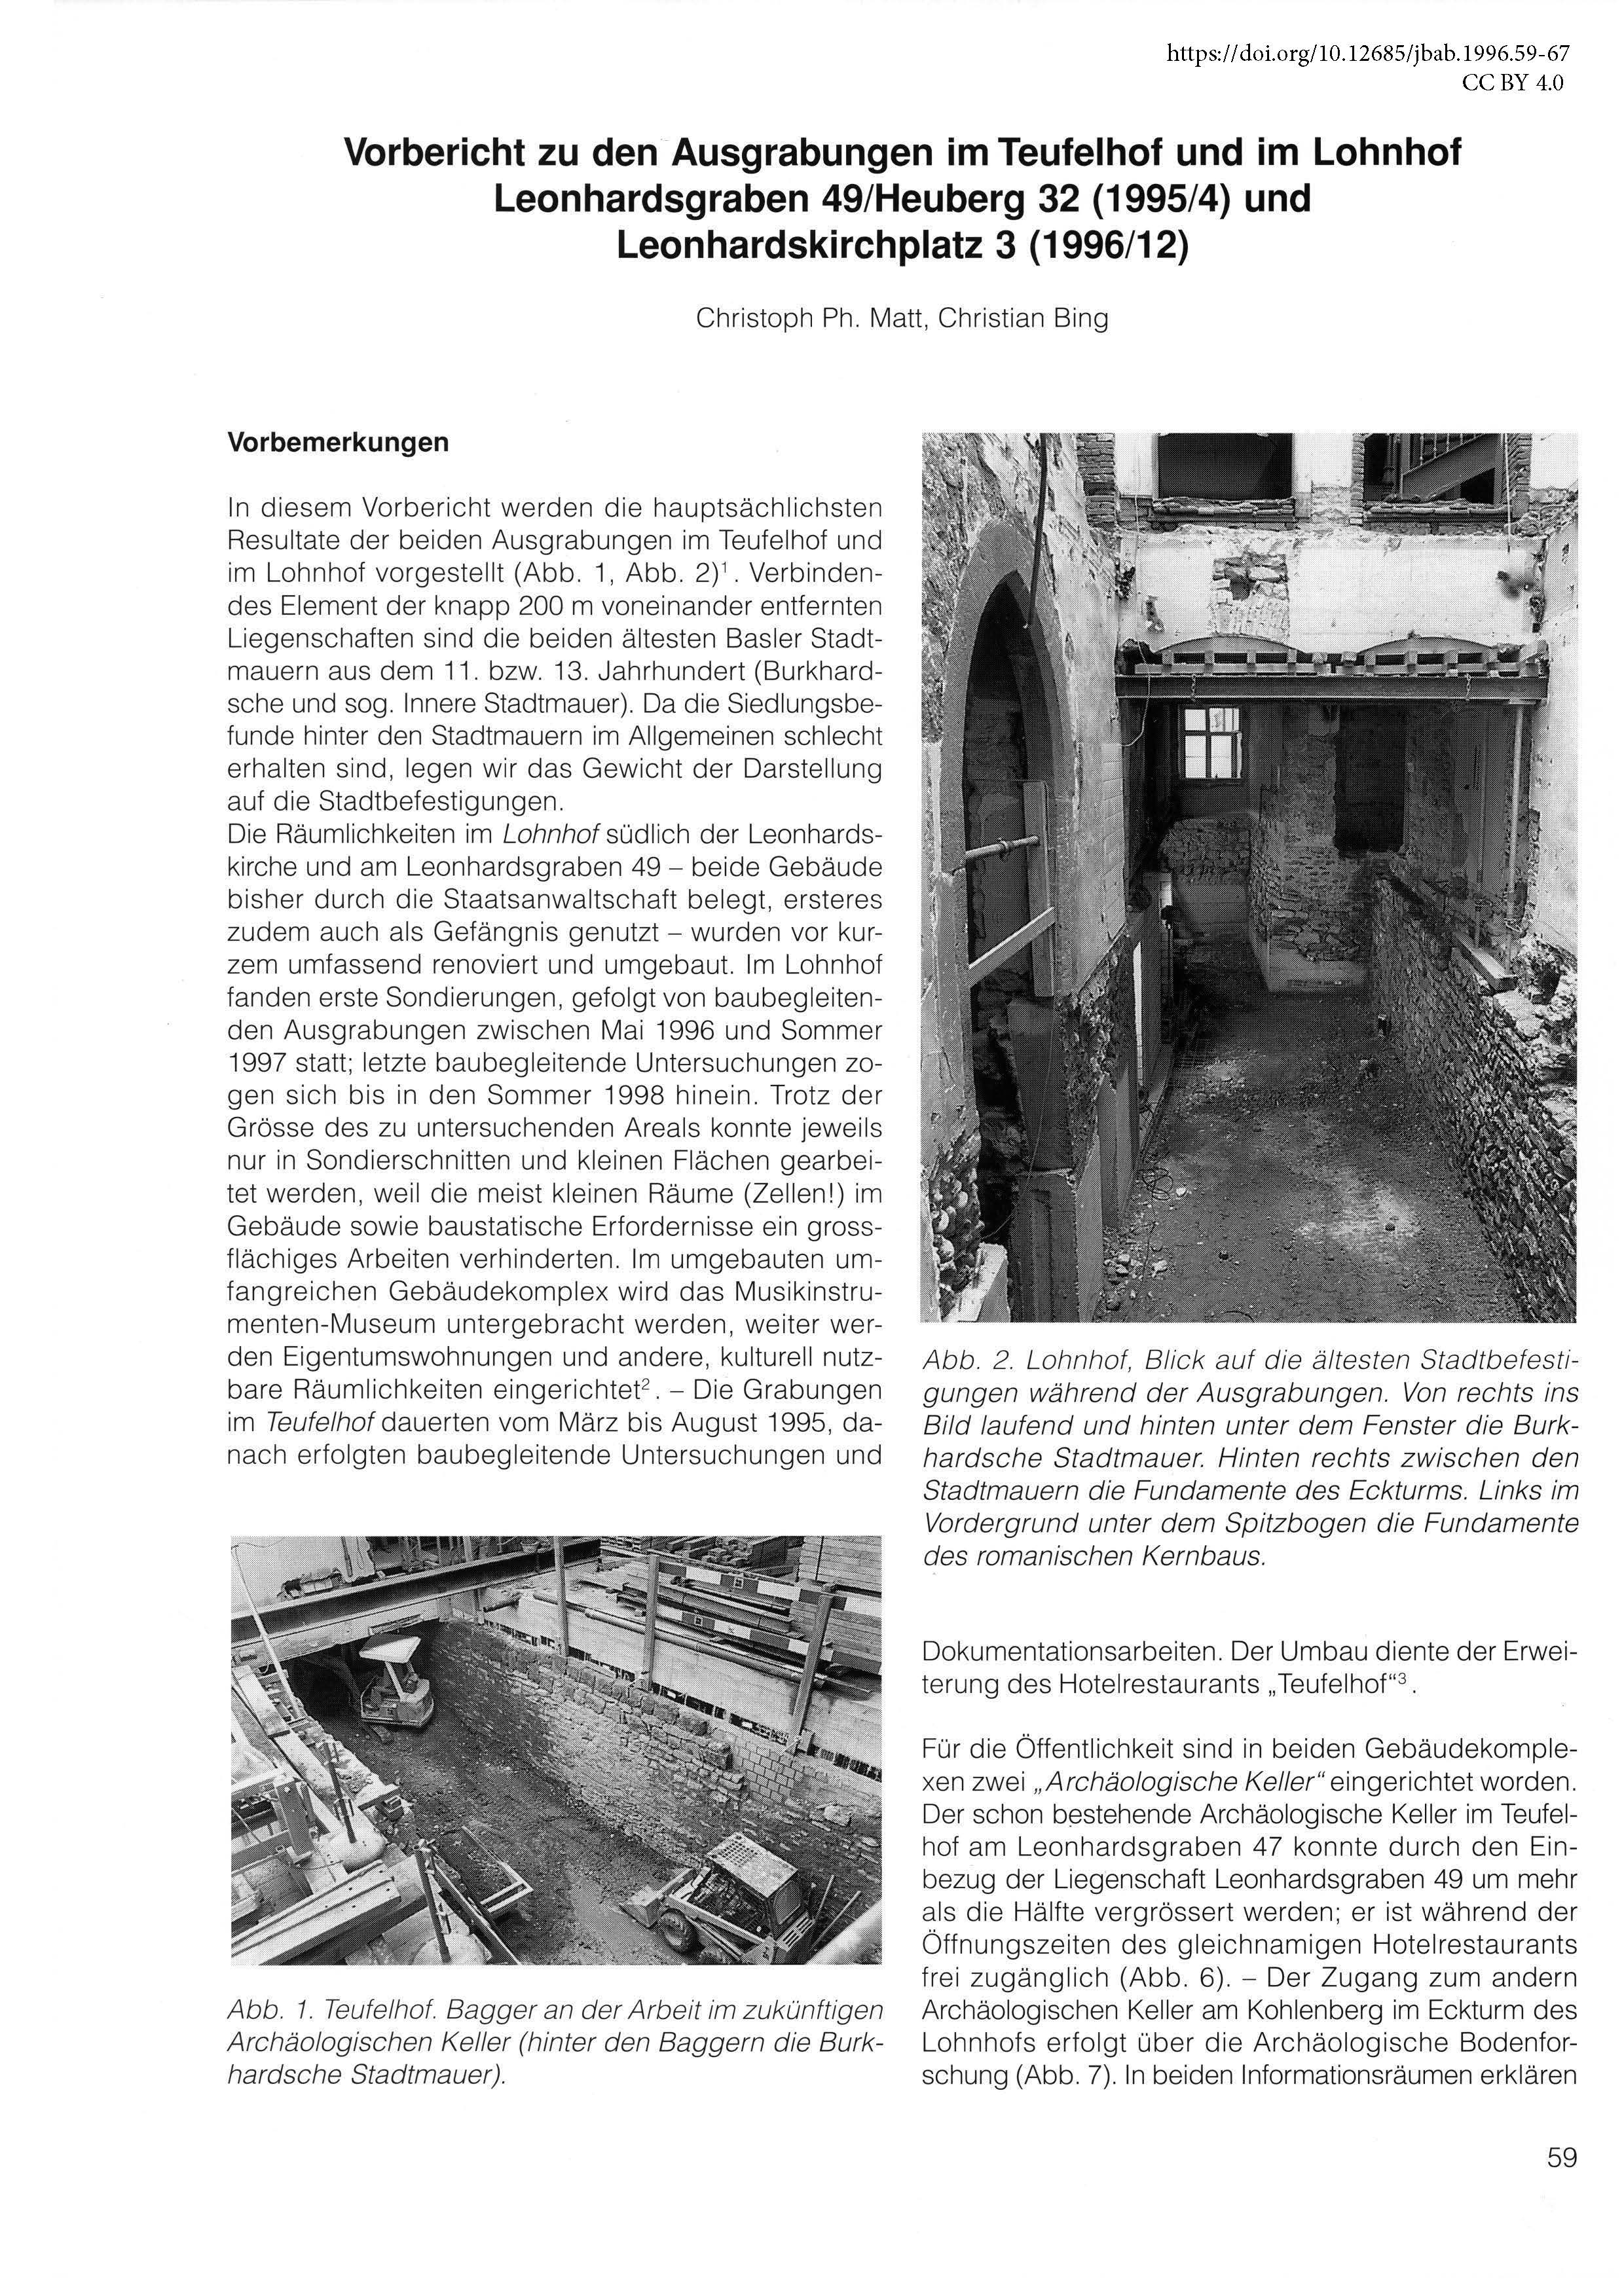 Erste Seite des Vorberichts über die Ausgrabungen im Teufelhof und Lohnhof